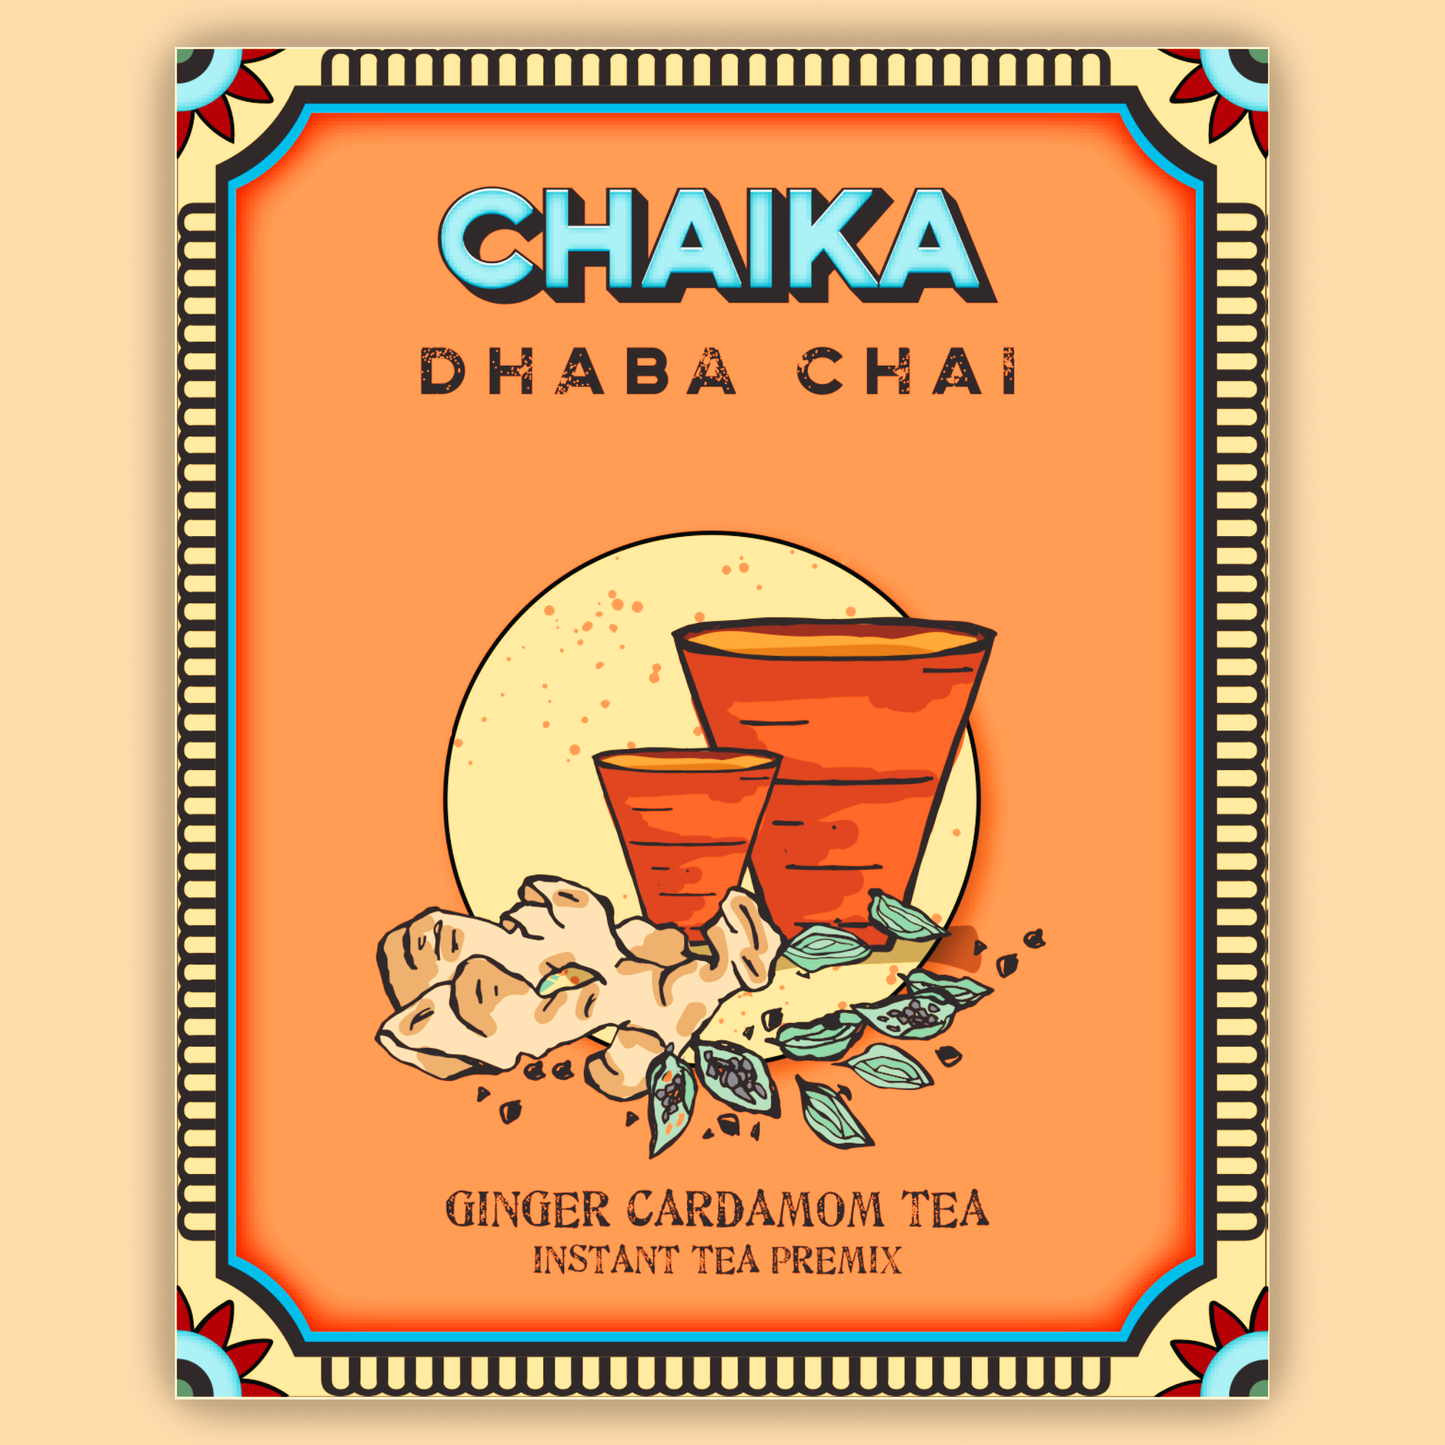 Chaika's Dhaba Chai